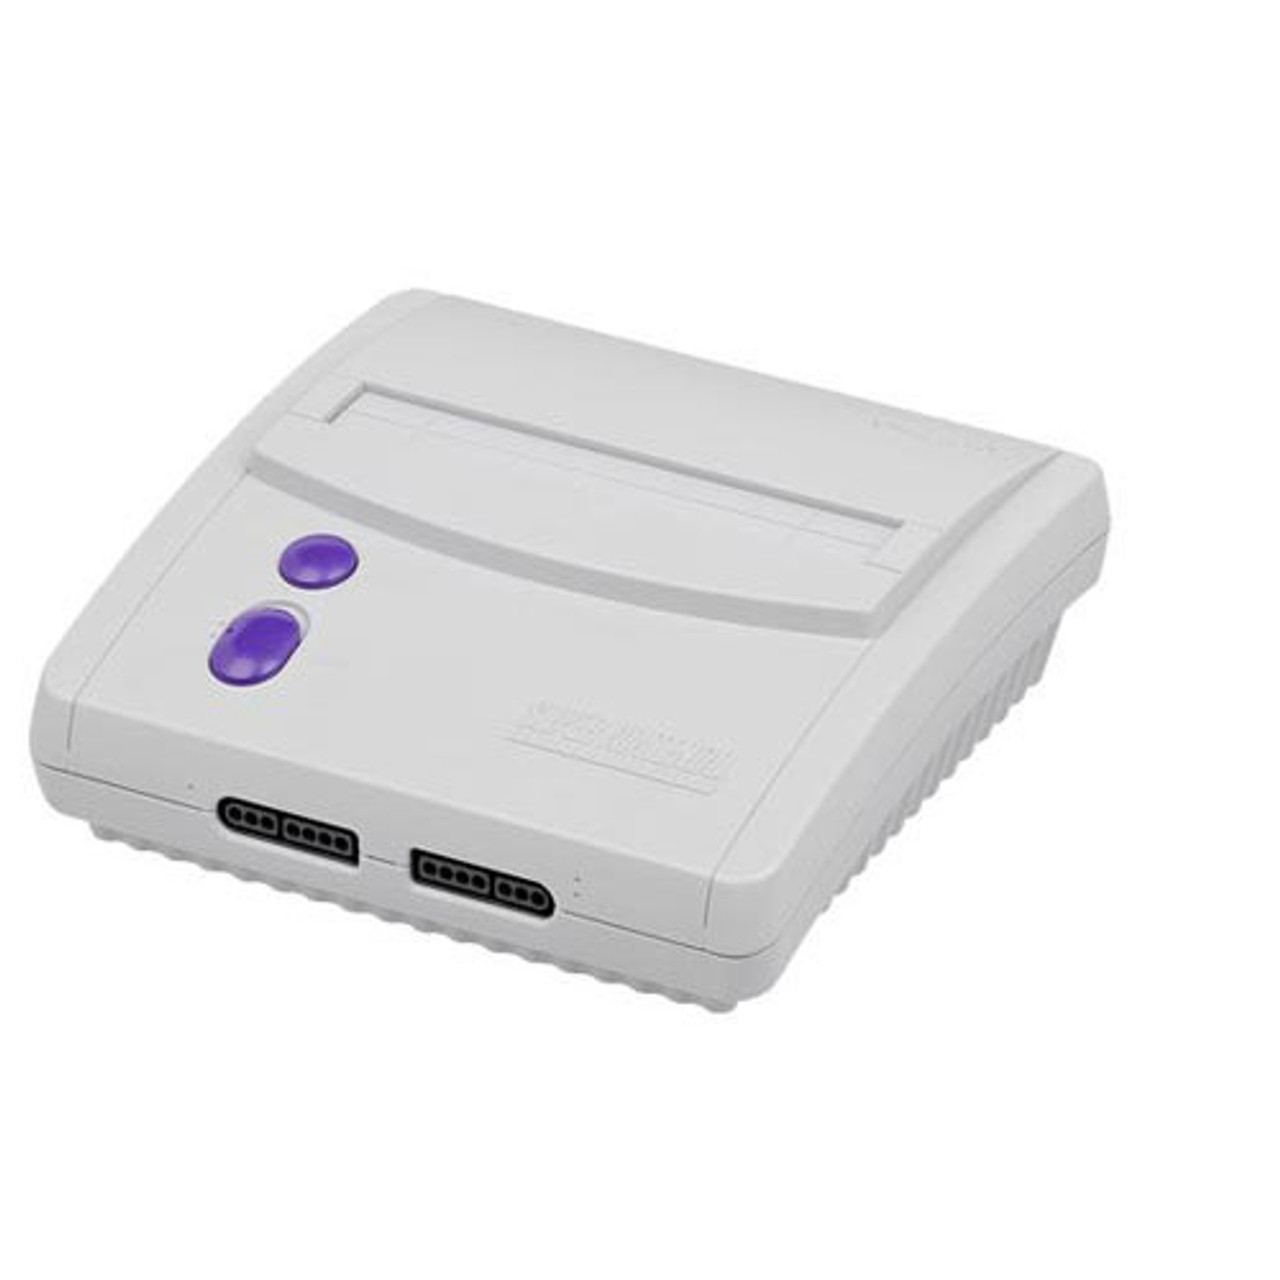 Super Nintendo Mini Console for Super Nintendo